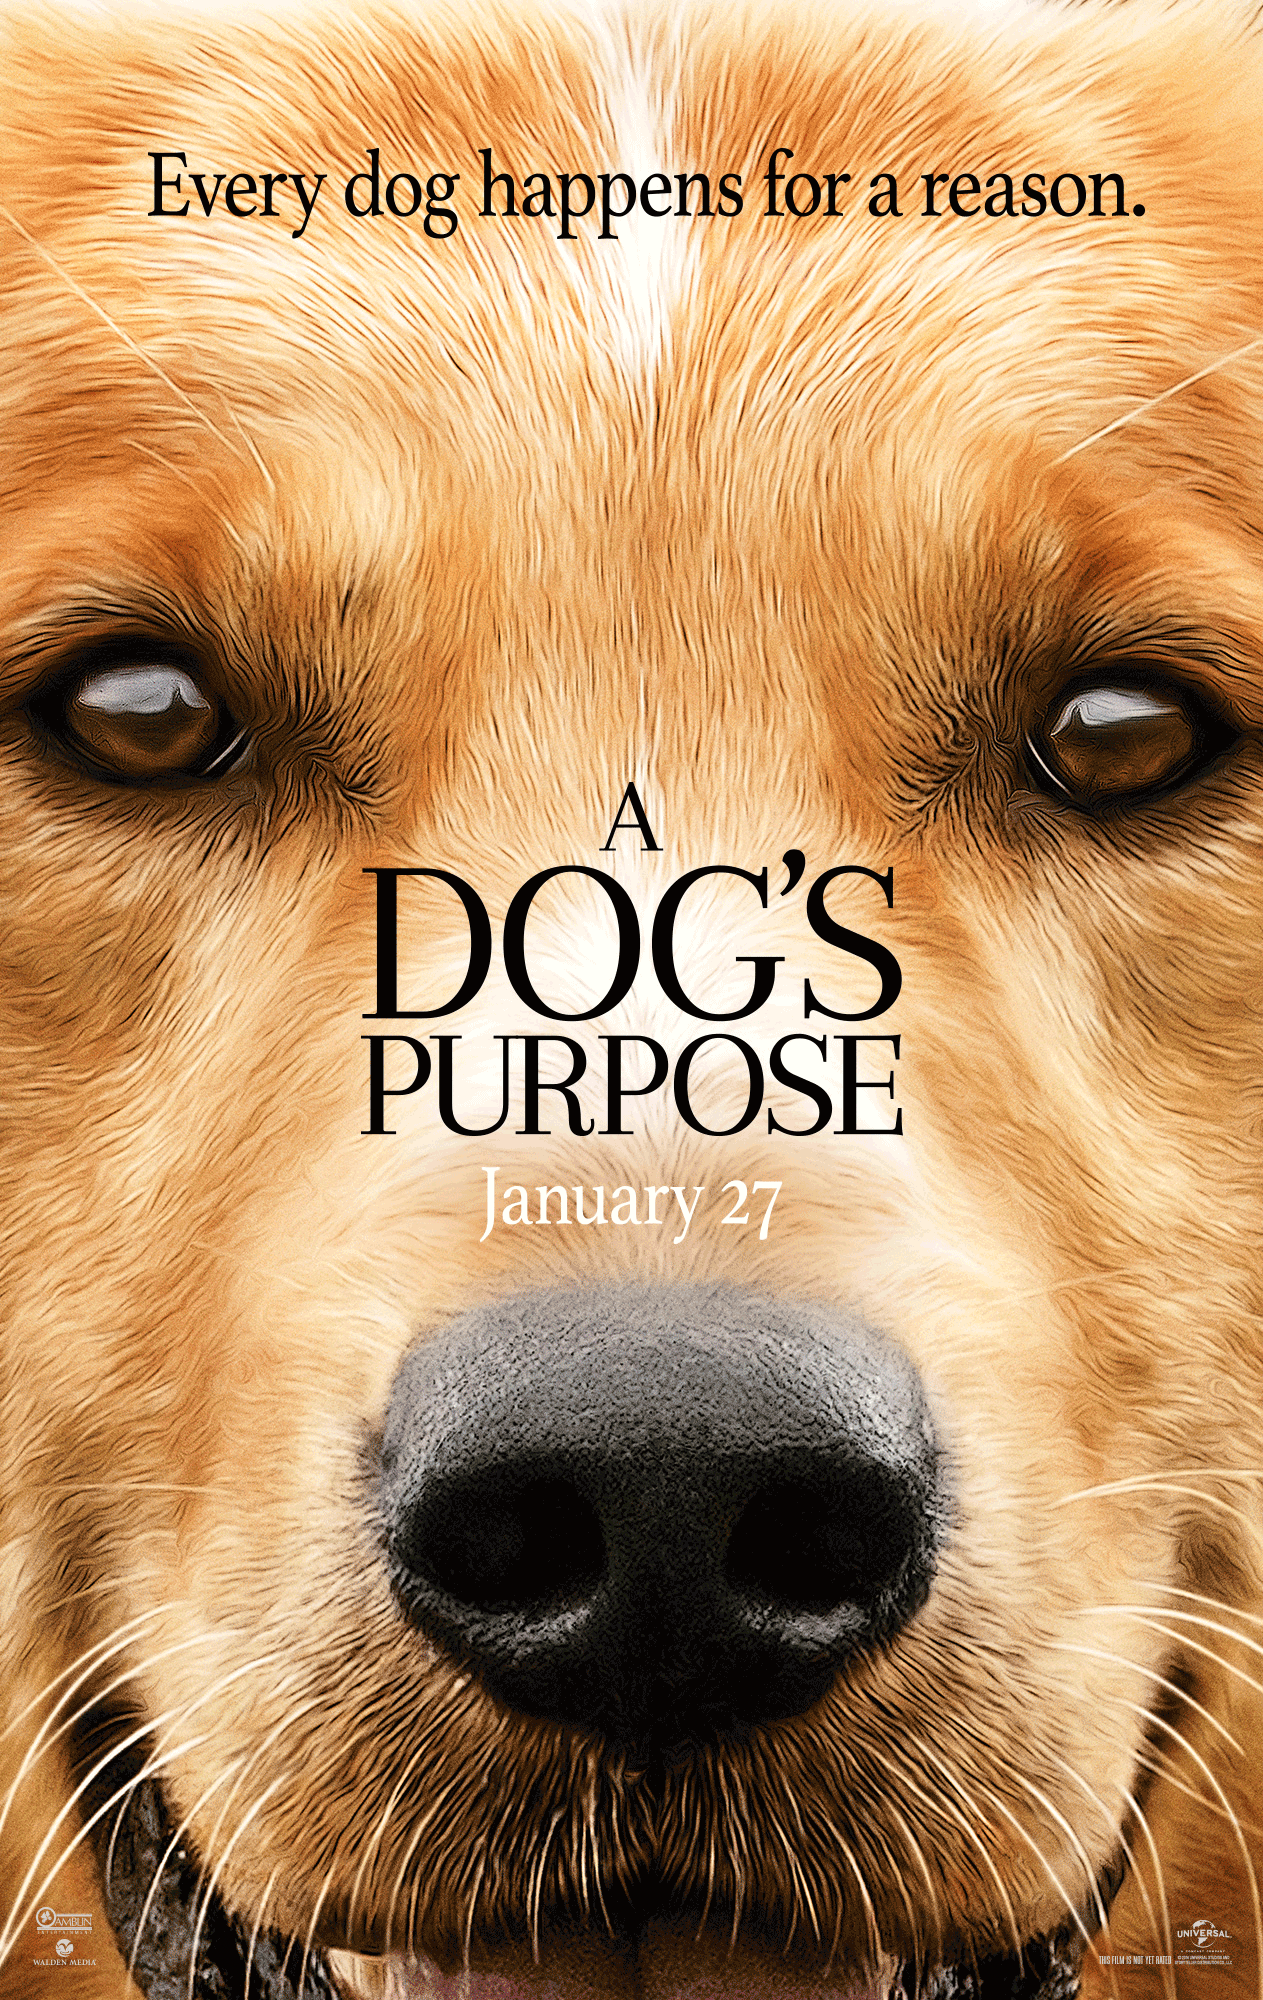 A Dog’s Purpose / Кучешки живот (2017)